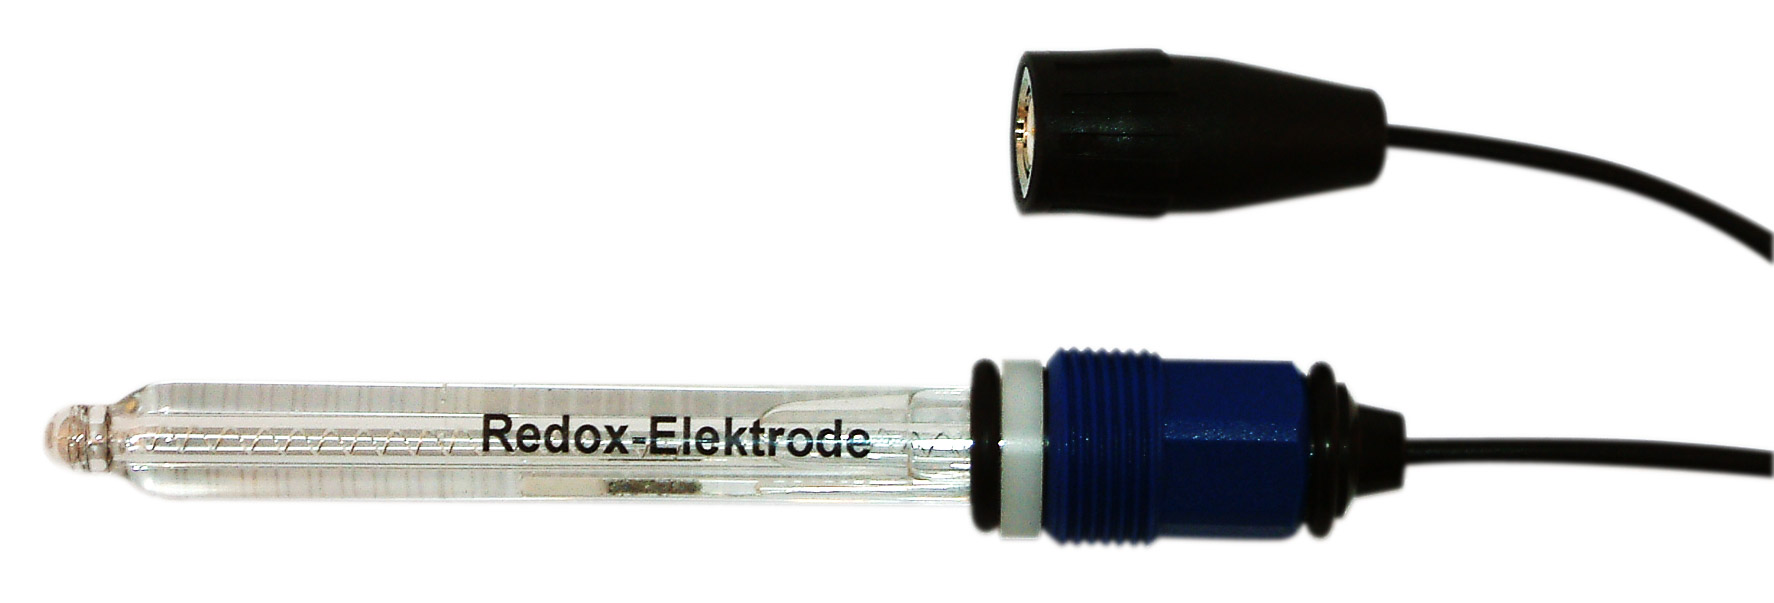 RX-Elektrode 100mm, mit Kabel 1m